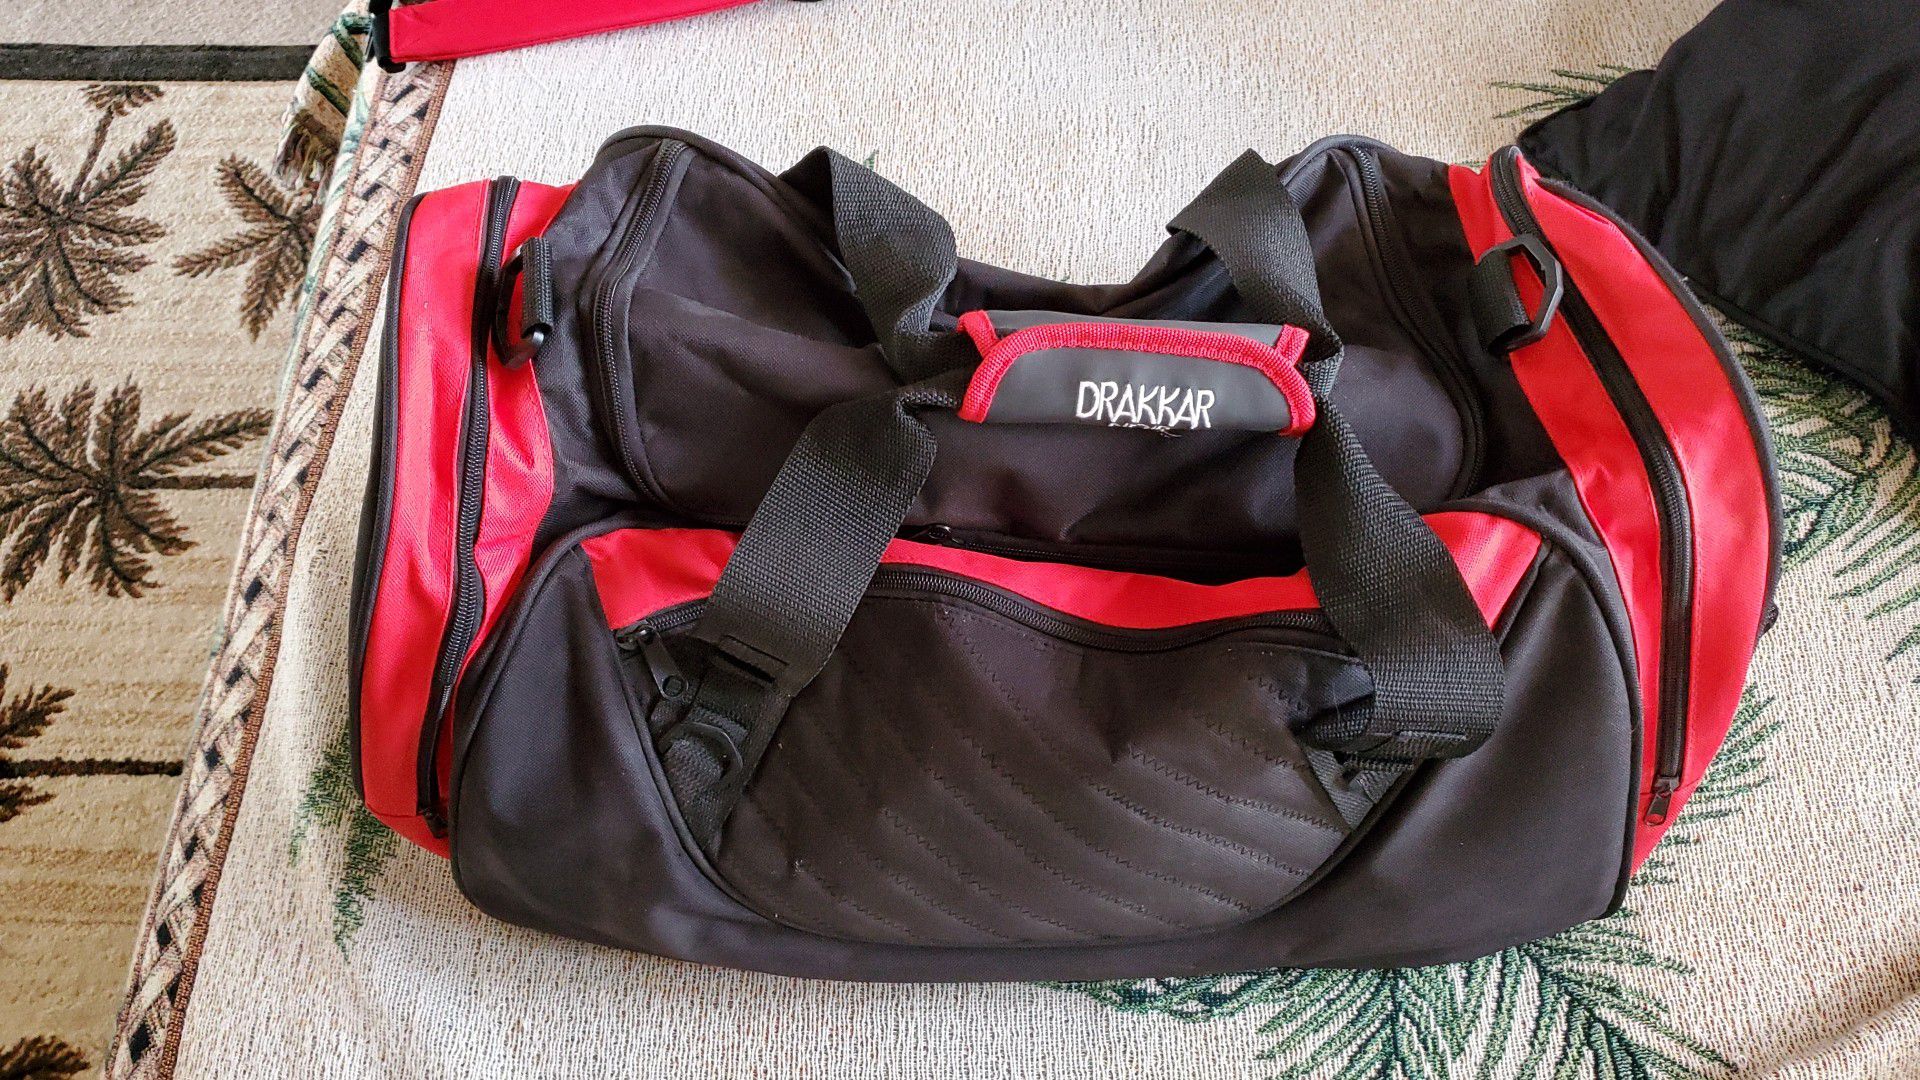 DRAKAR duffle bag with shoulder straps